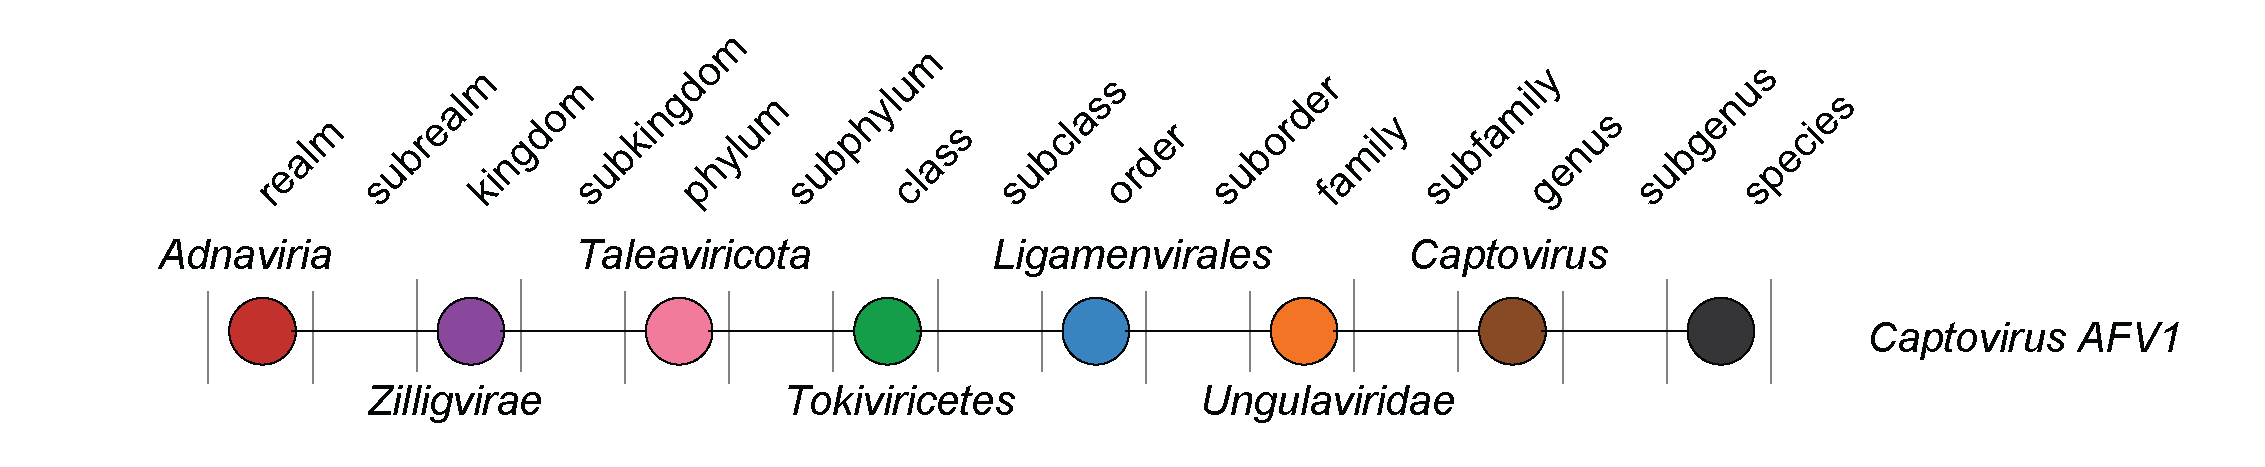 Ungulaviridae taxonomy